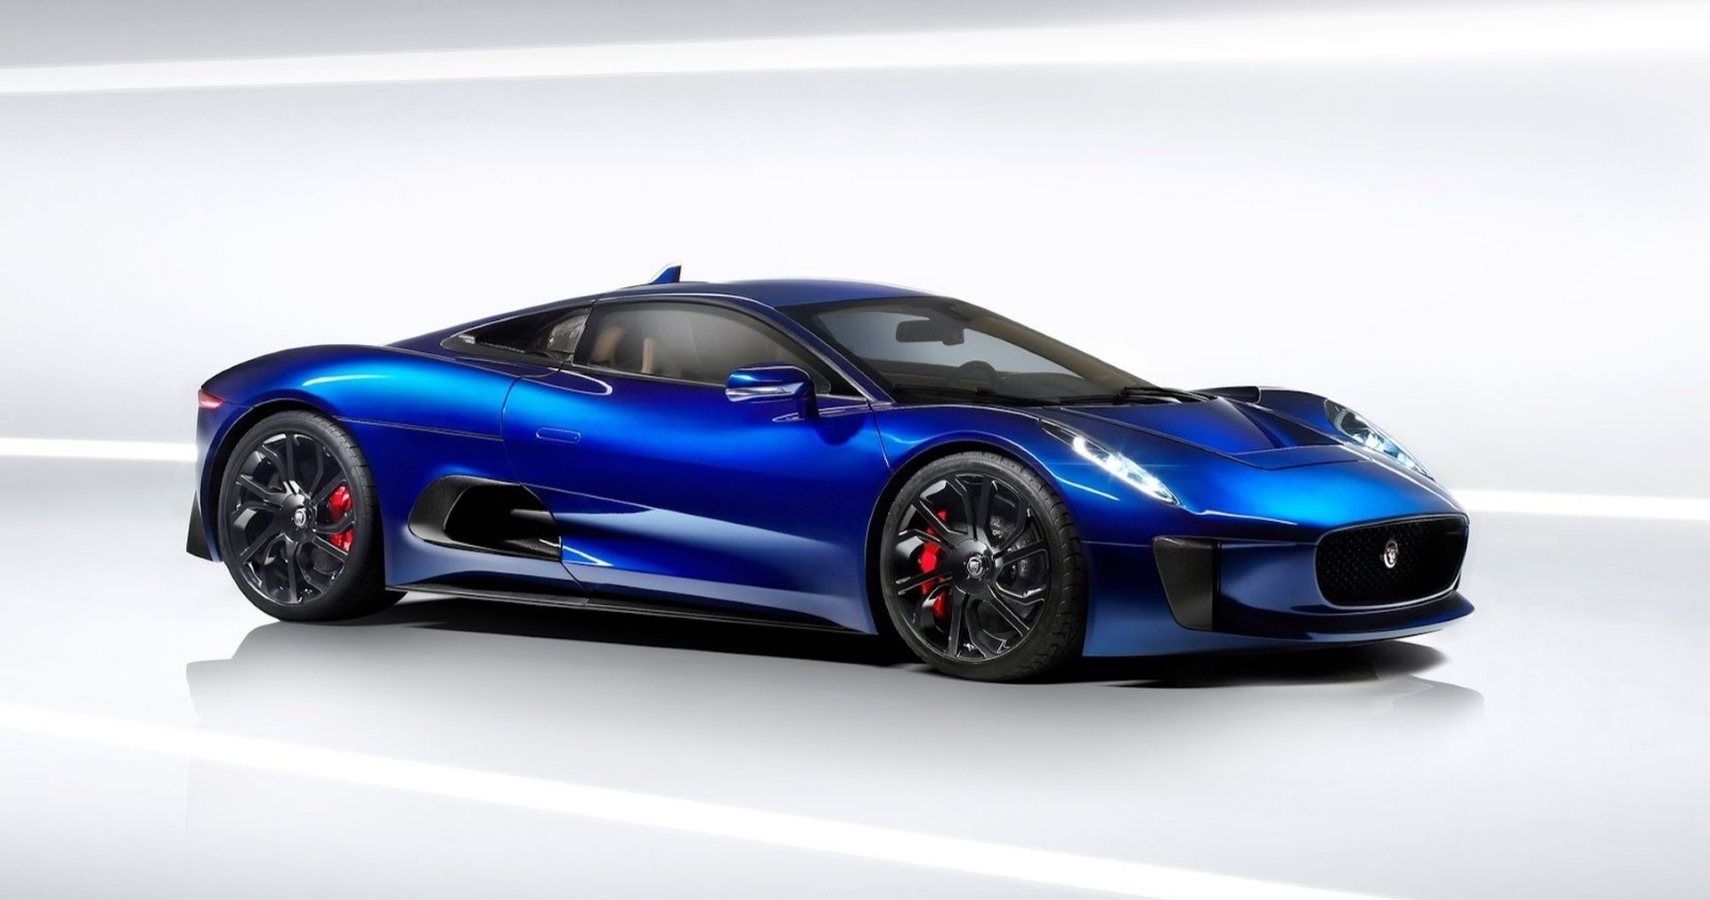 Rumor: New Jaguar J-Type Information Revealed